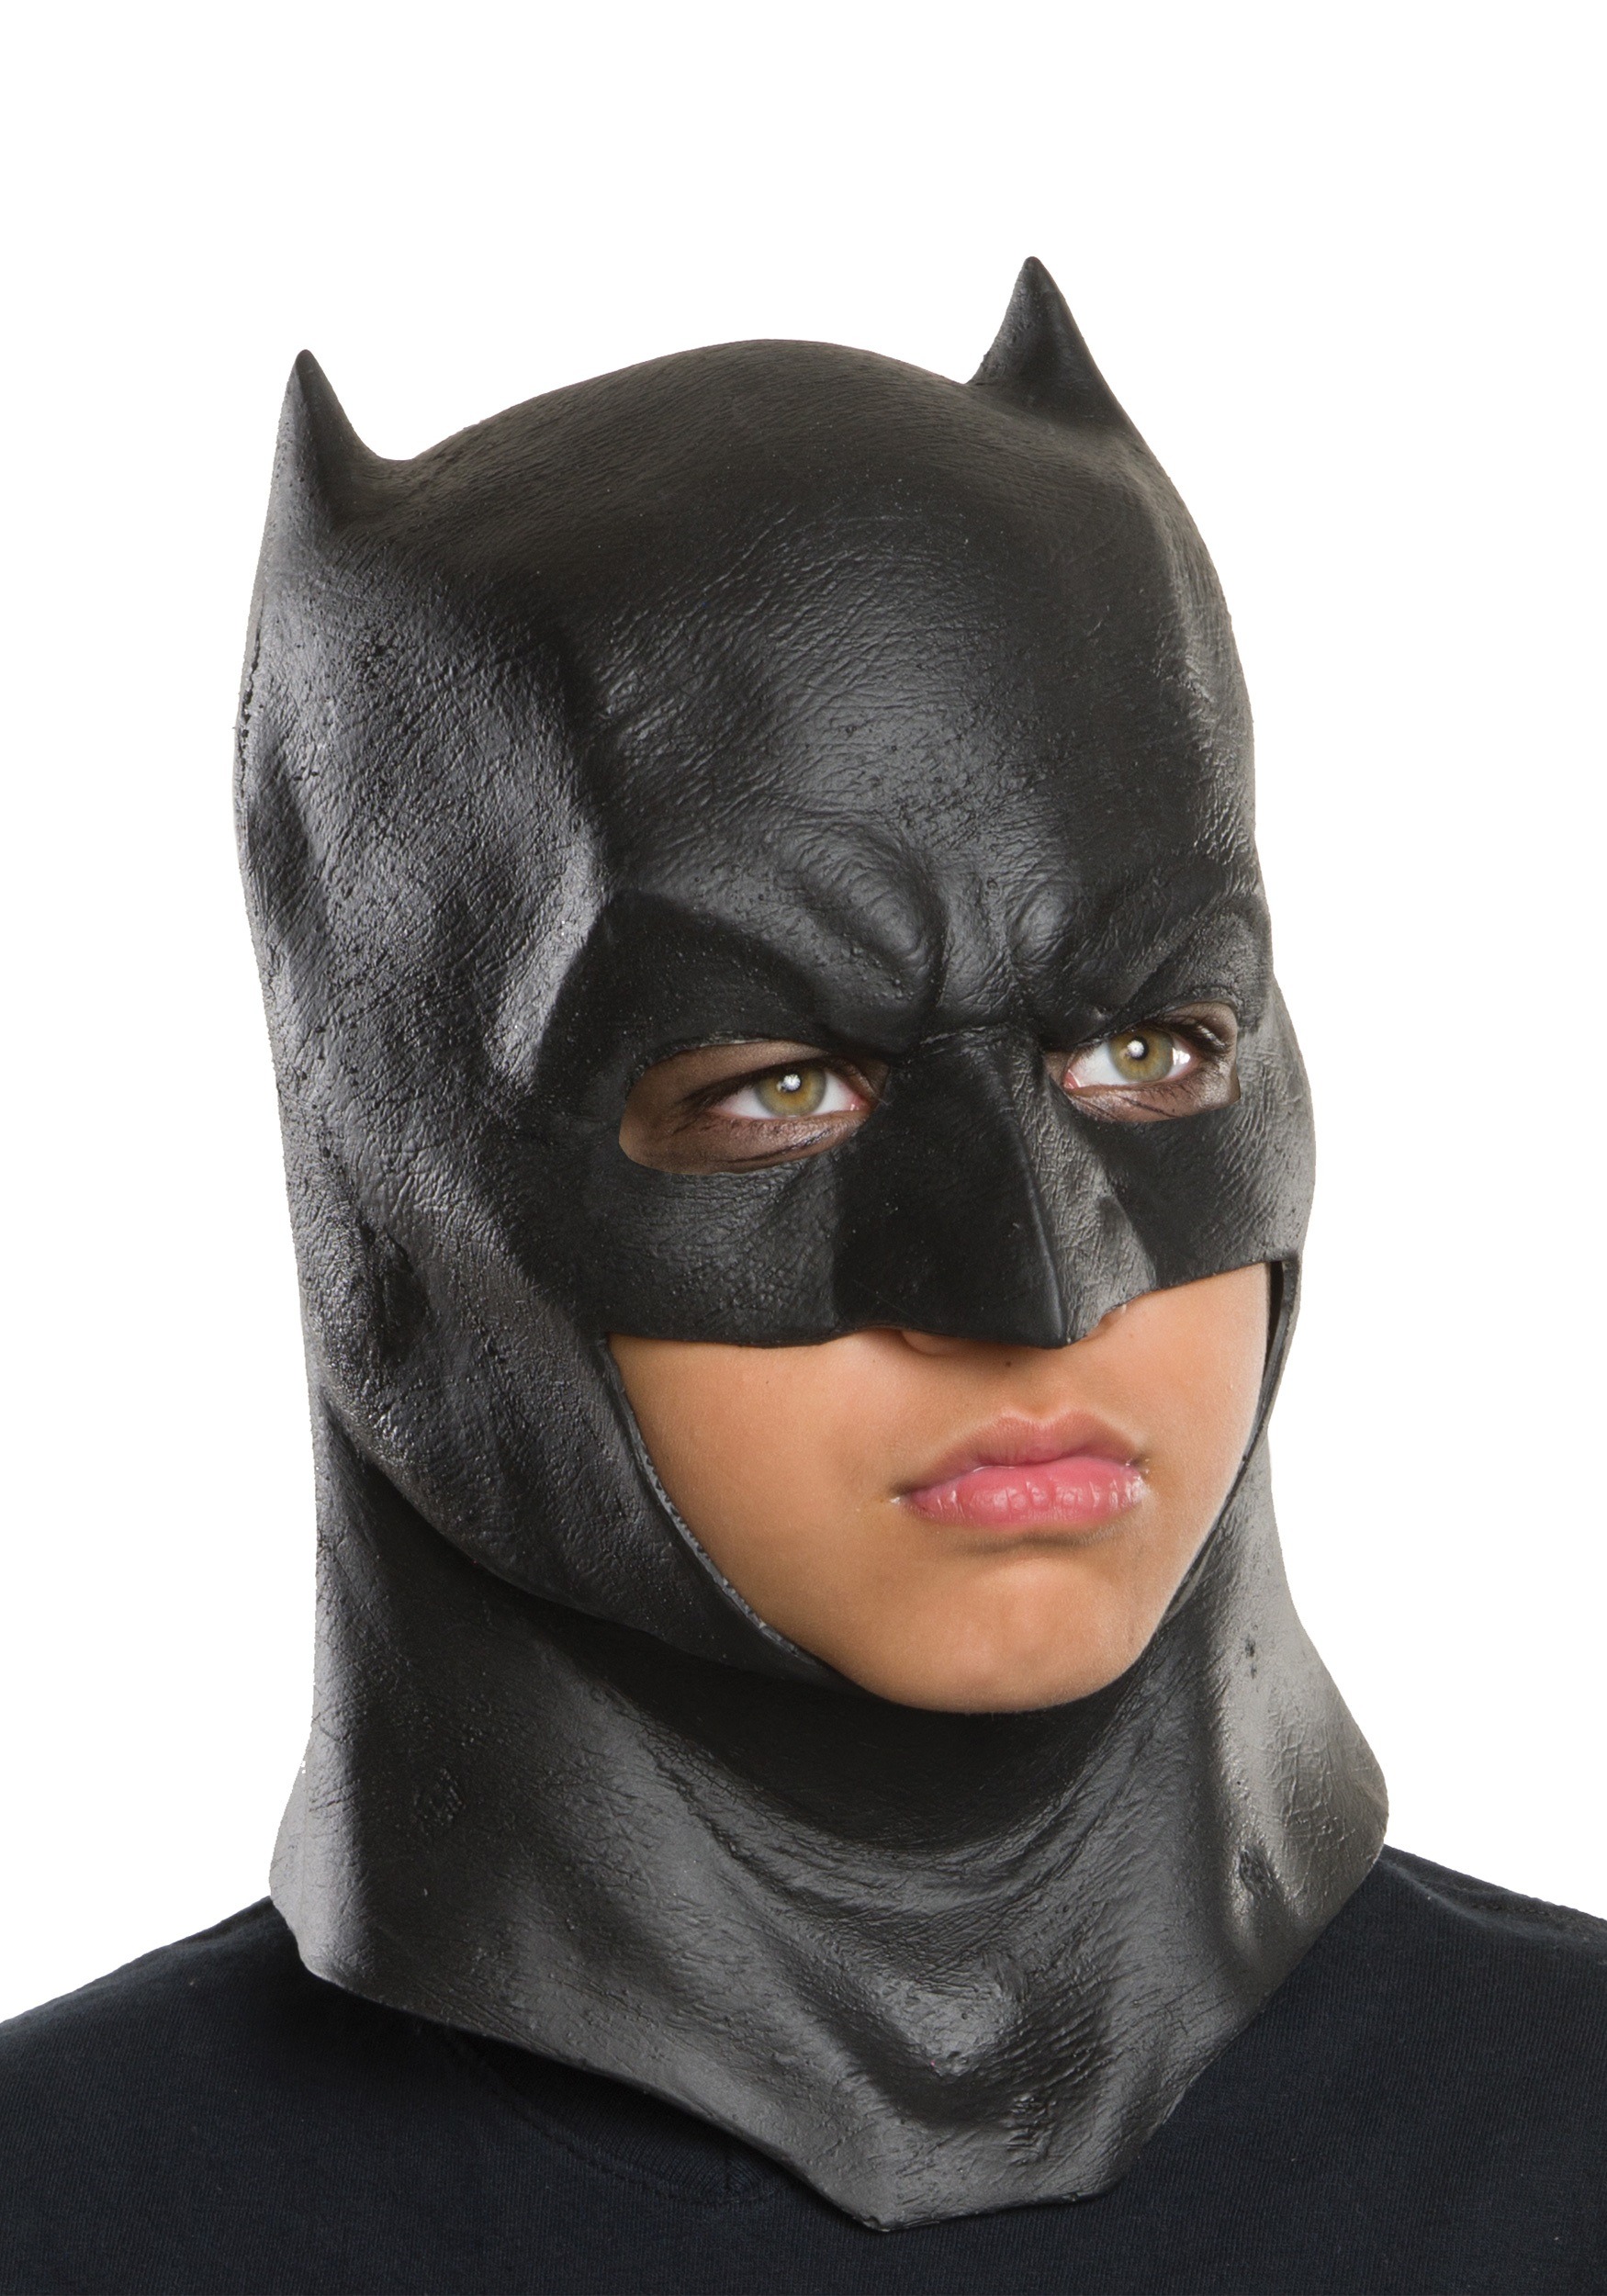 Batman: Mask of the Phantasm 1993 - IMDb